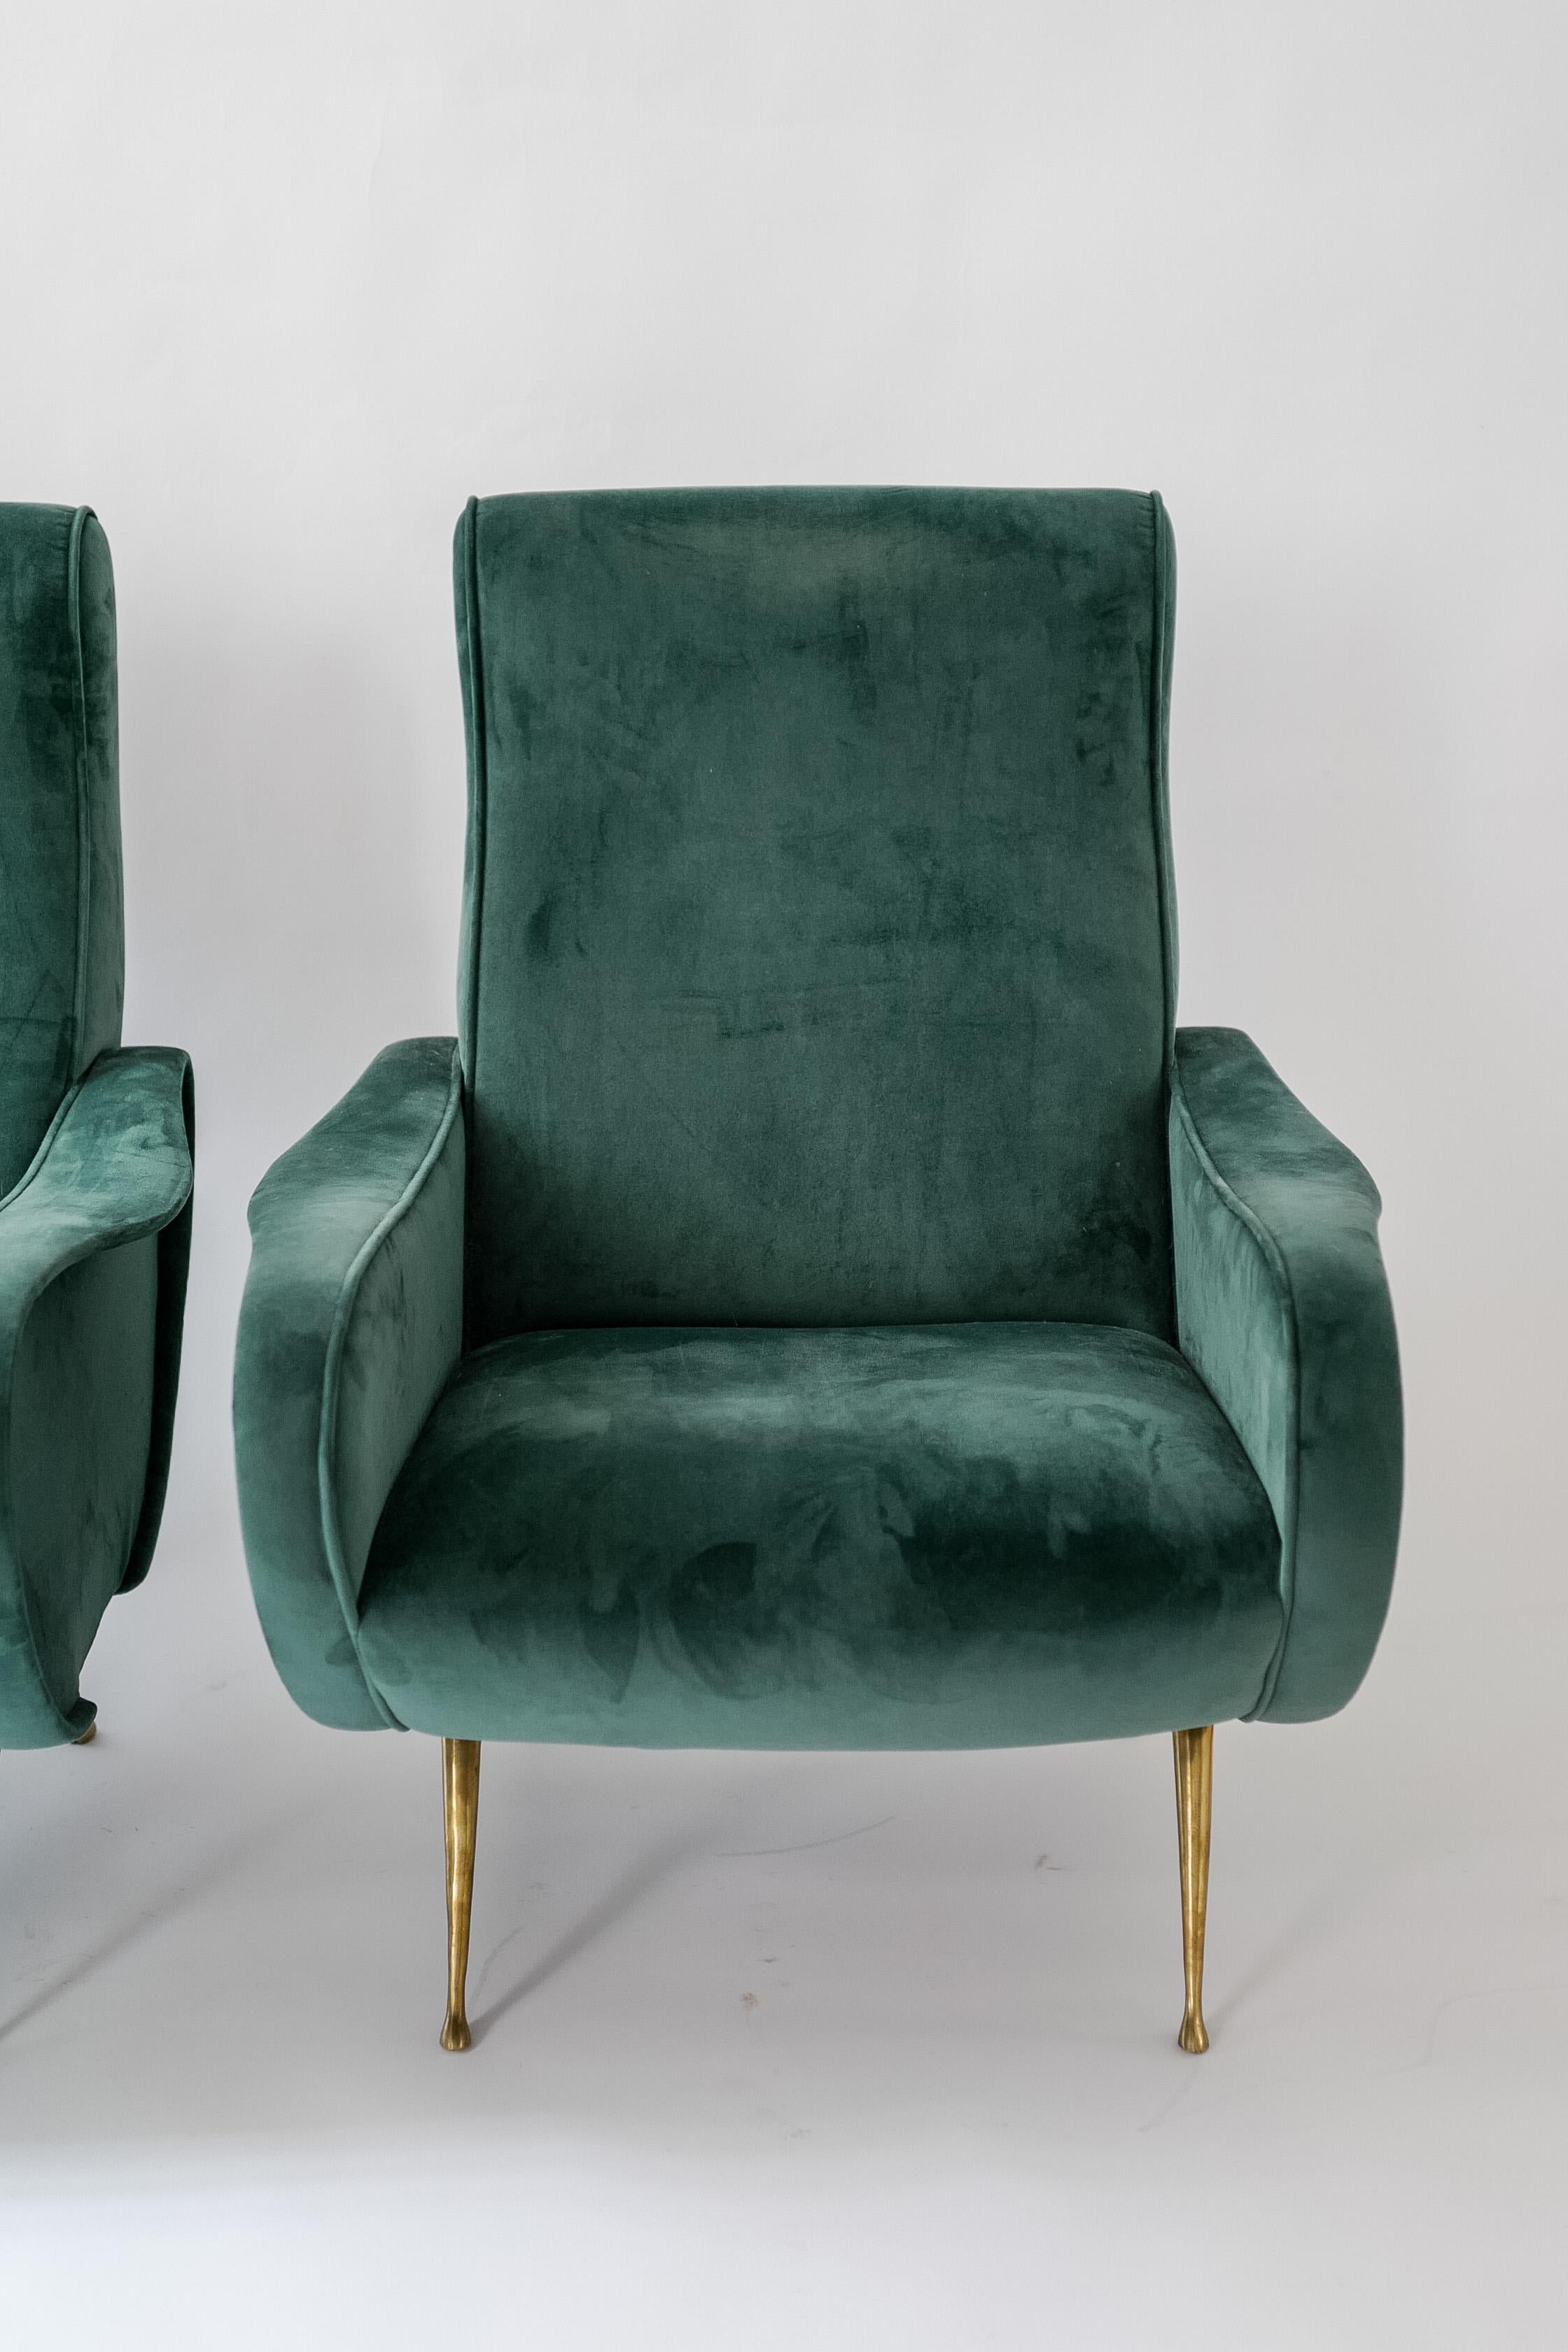 Paire de chaises de dame iconiques de Marco Zanuso, Italie. Il est doté de pieds en laiton et a été récemment recouvert d'un riche velours vert. Cette forme est extrêmement confortable et visuellement attrayante. 